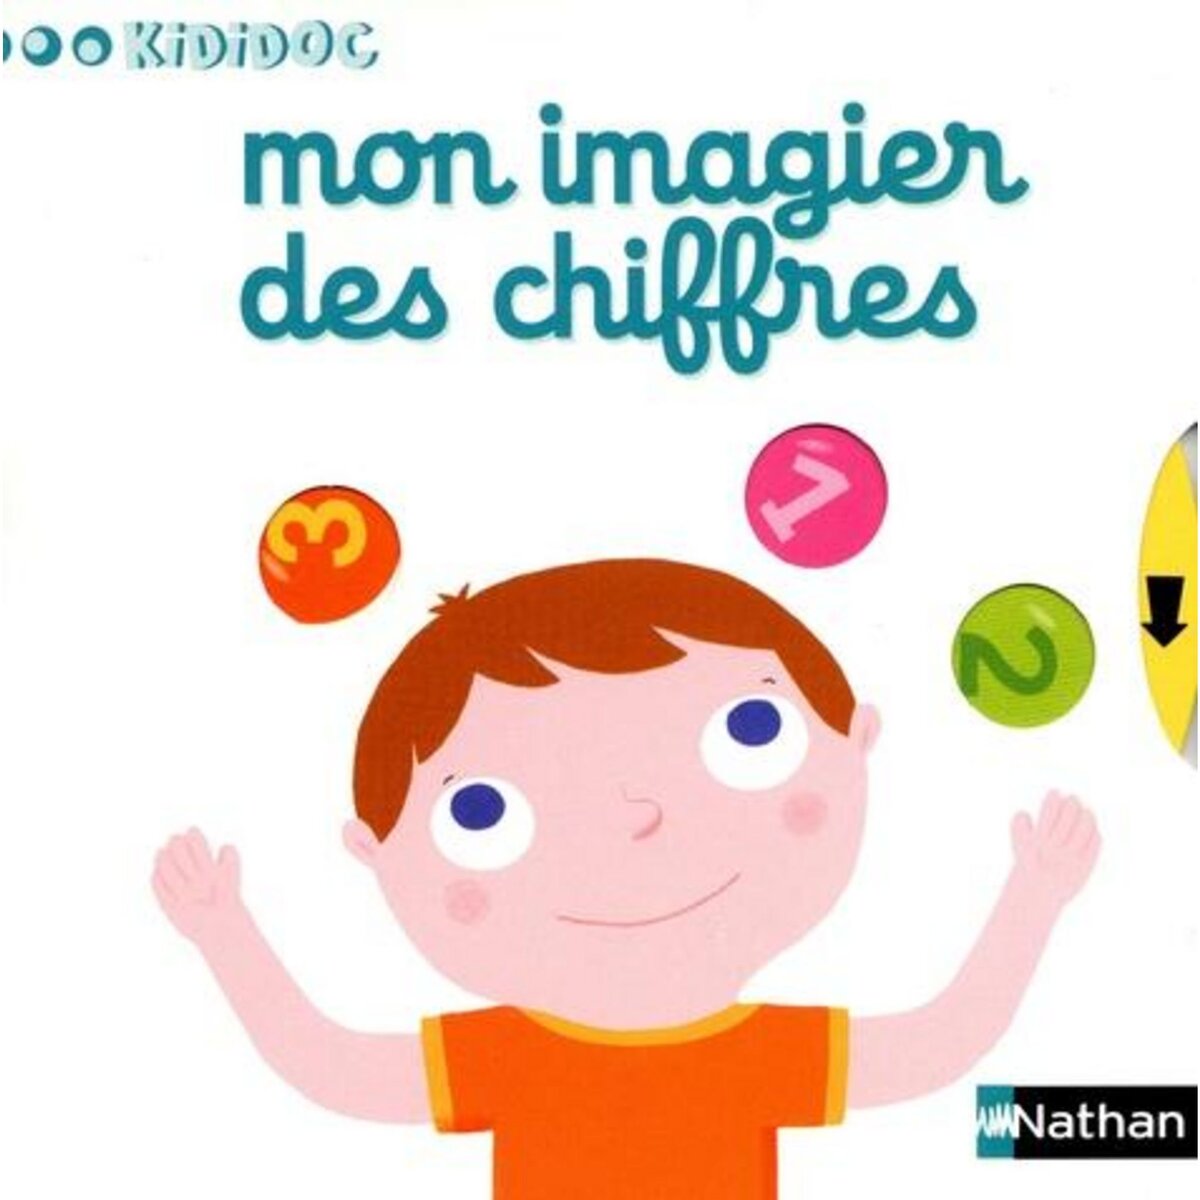  MON IMAGIER DES CHIFFRES, Choux Nathalie